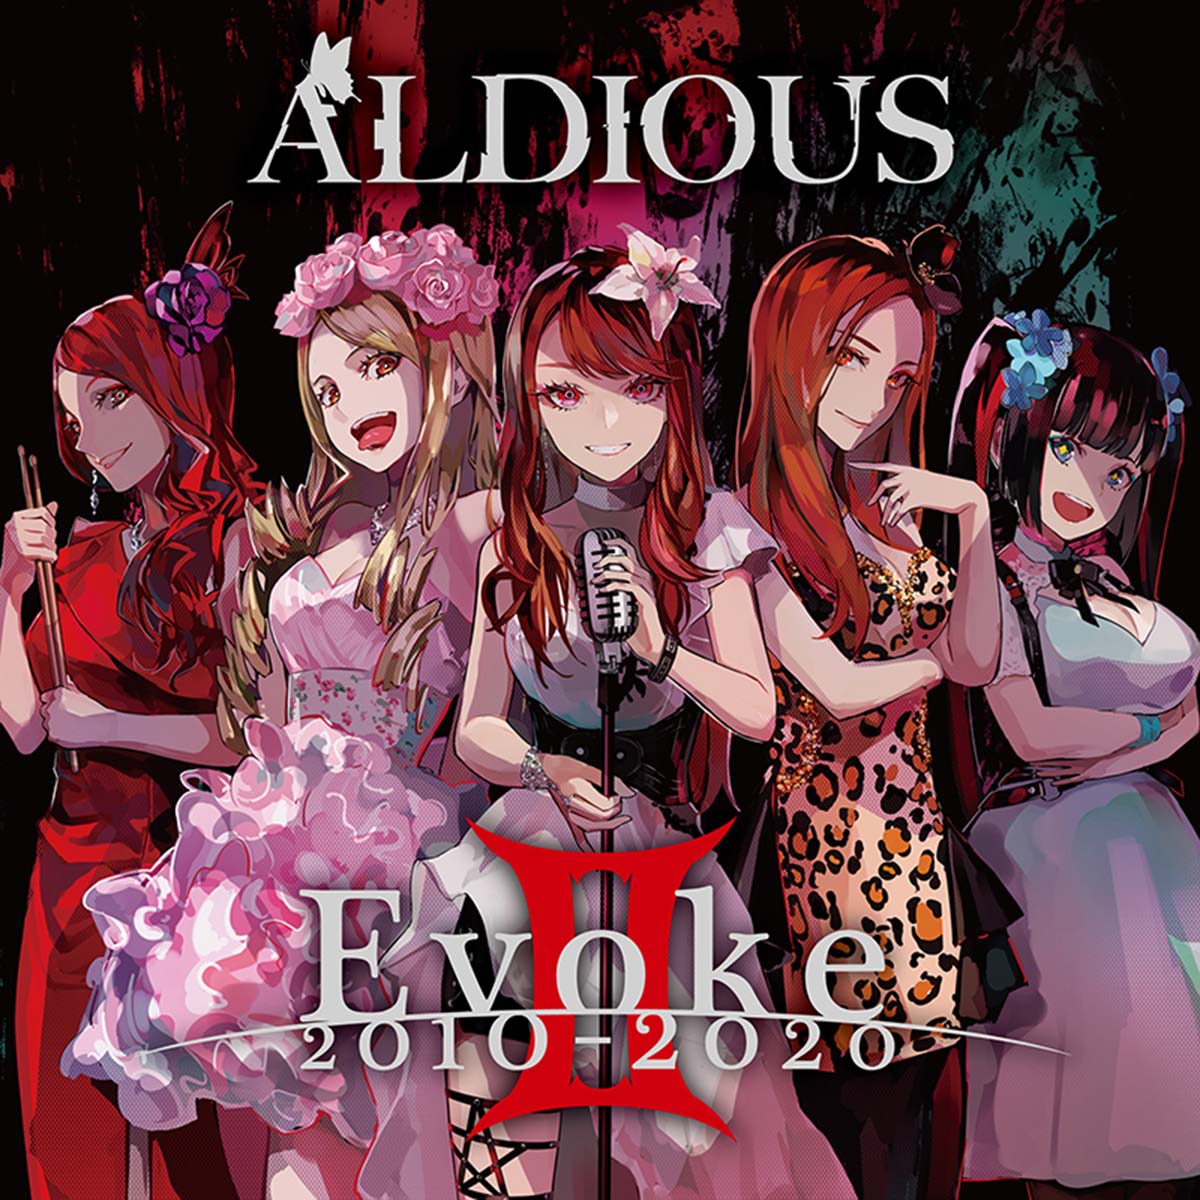 Aldious Evoke II 2010-2020 album